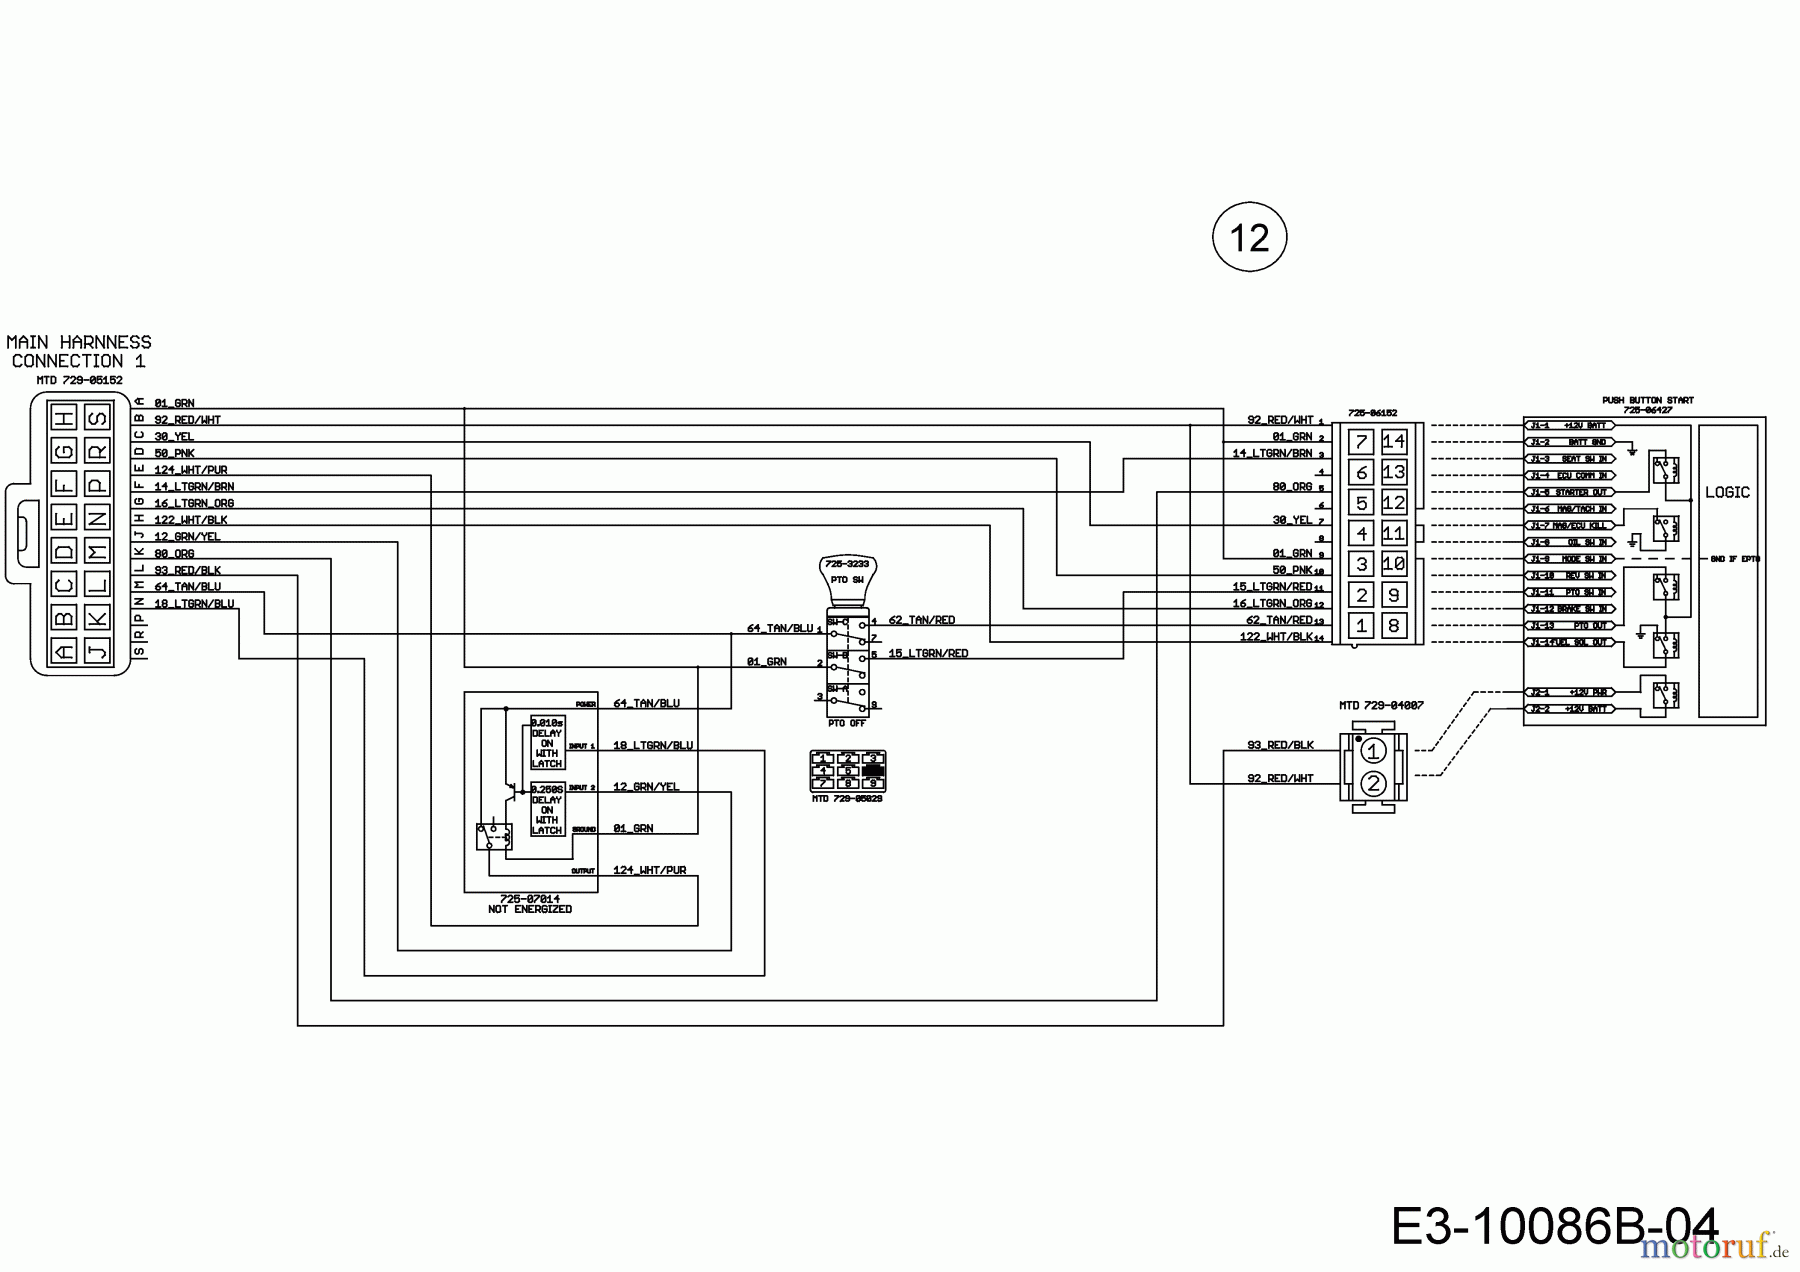  WOLF-Garten Expert Rasentraktoren 106.220 H 13BAA1VR650  (2018) Schaltplan Elektromagnetkupplung